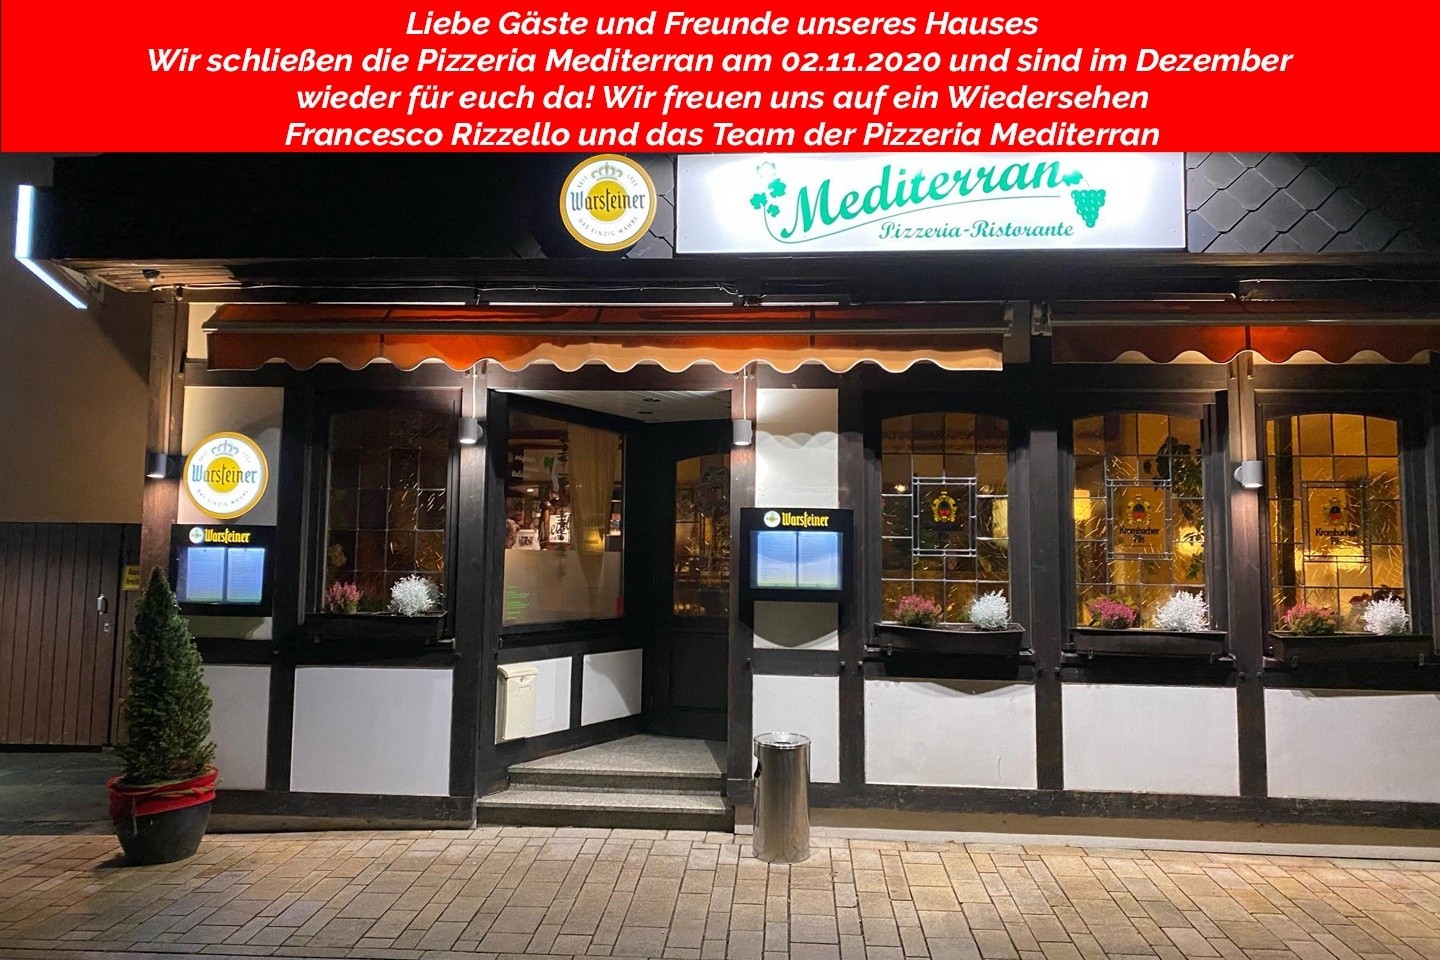 Vorübergehende Schließung der Pizzeria Mediterran bei Franco ab dem 02.11.2020